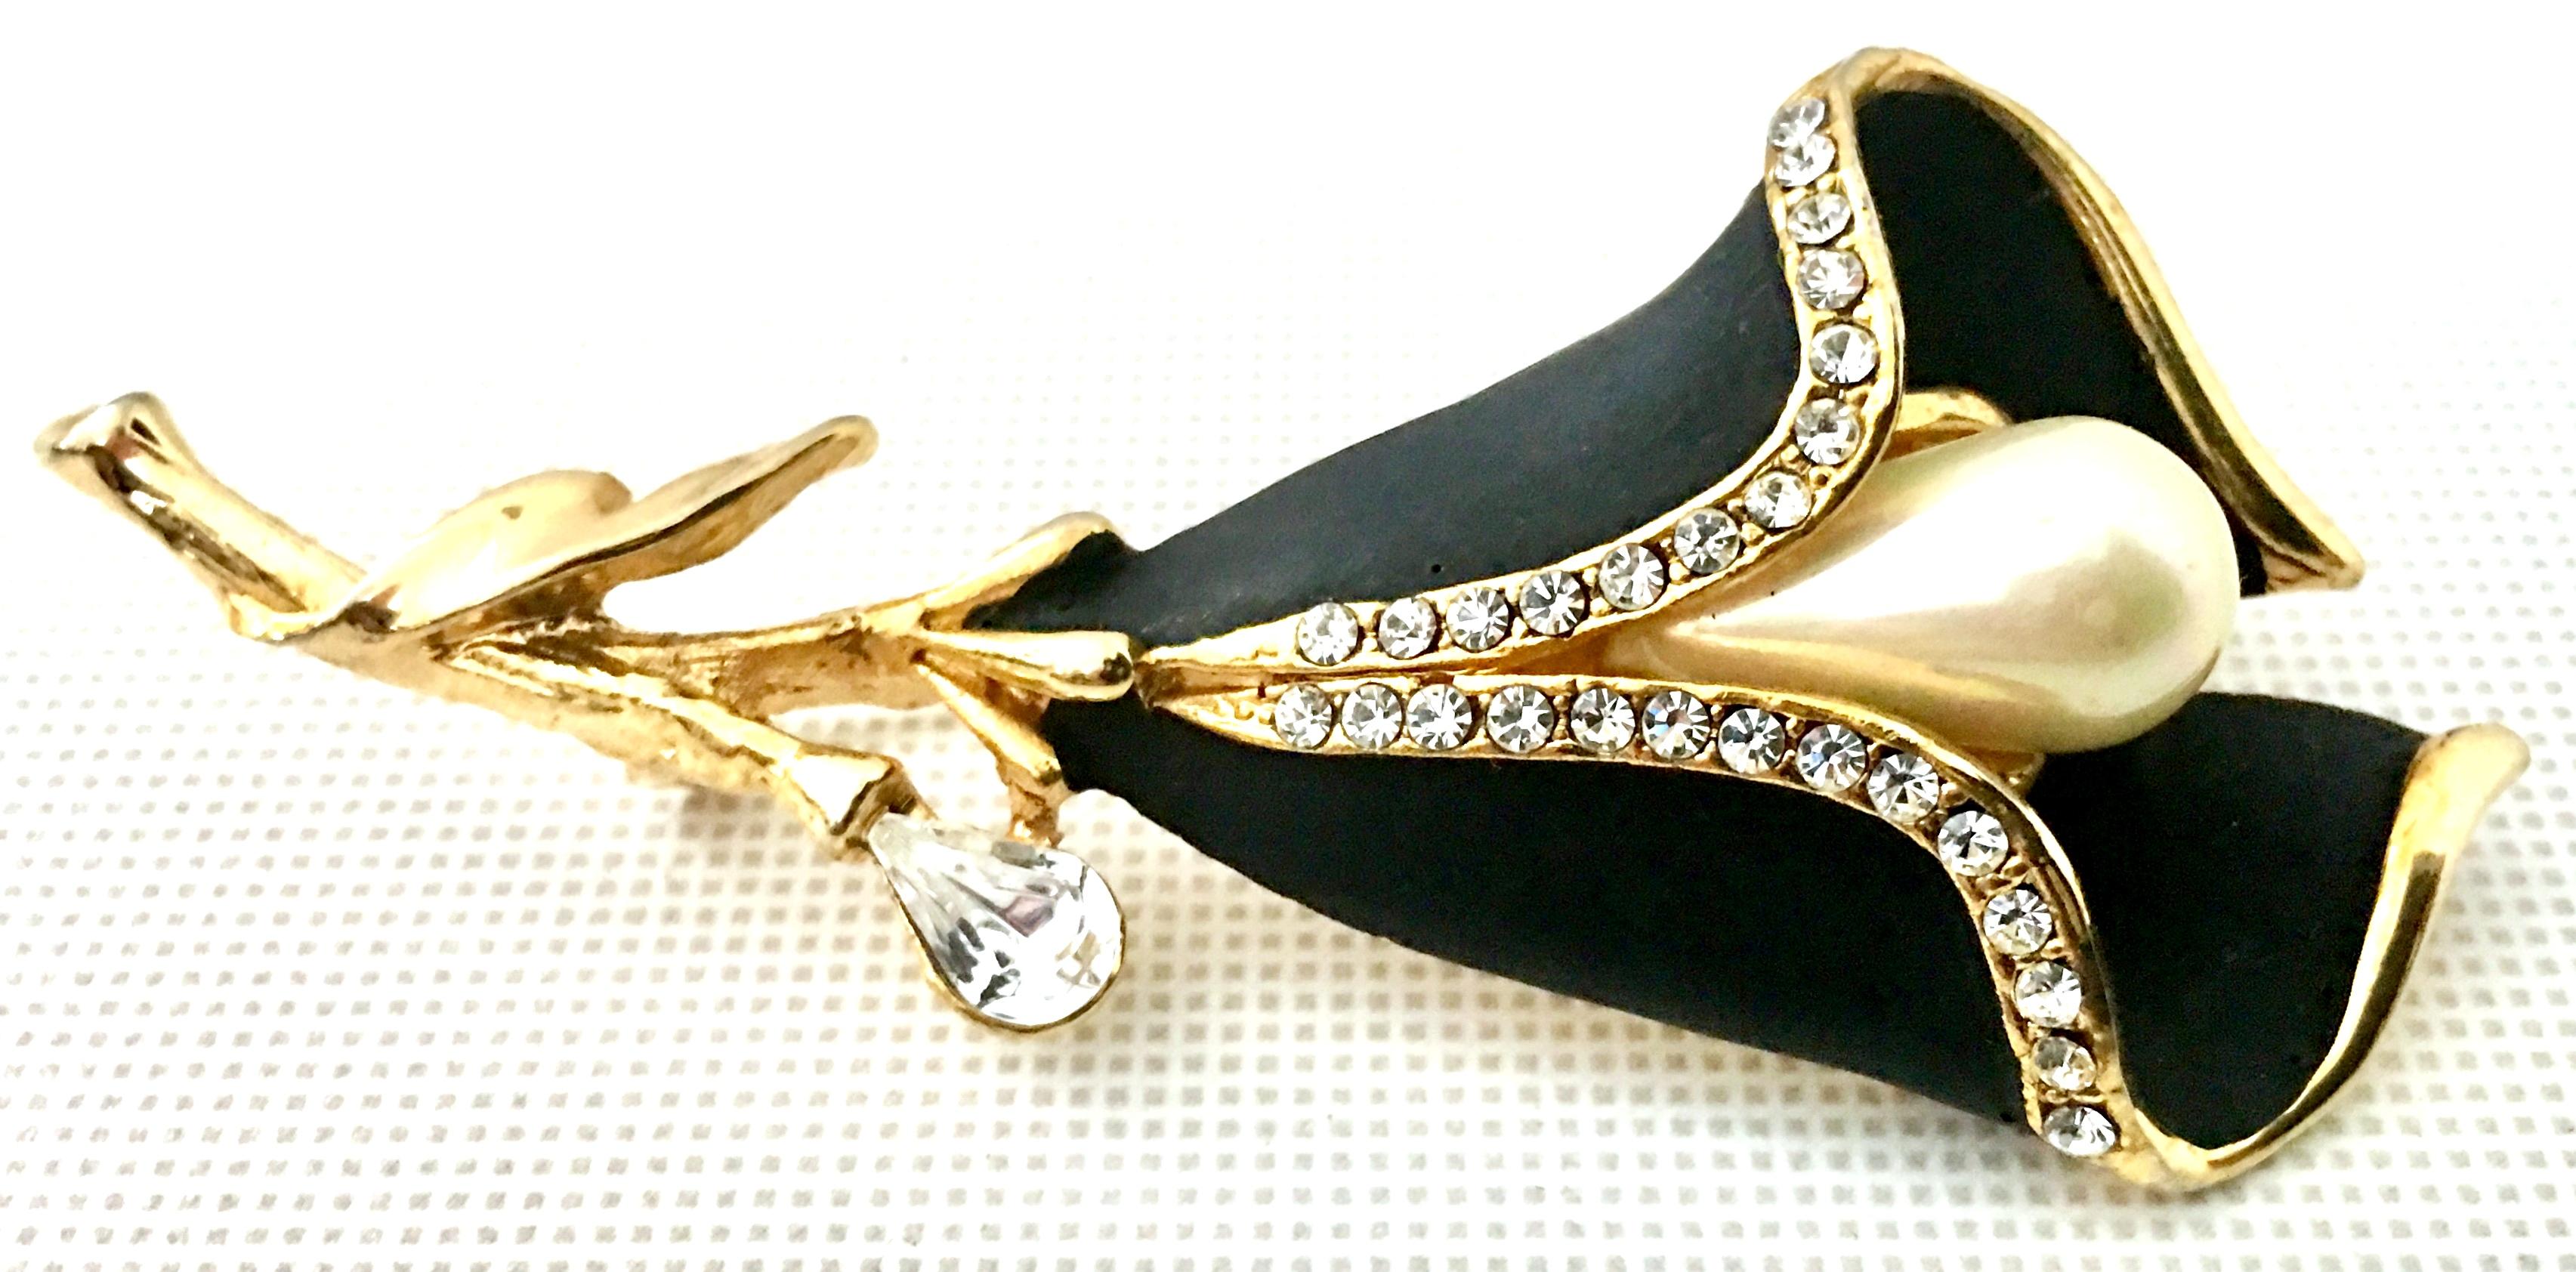 Women's or Men's 20th Century Gold Enamel & Faux Pearl Flower Brooch For Sale